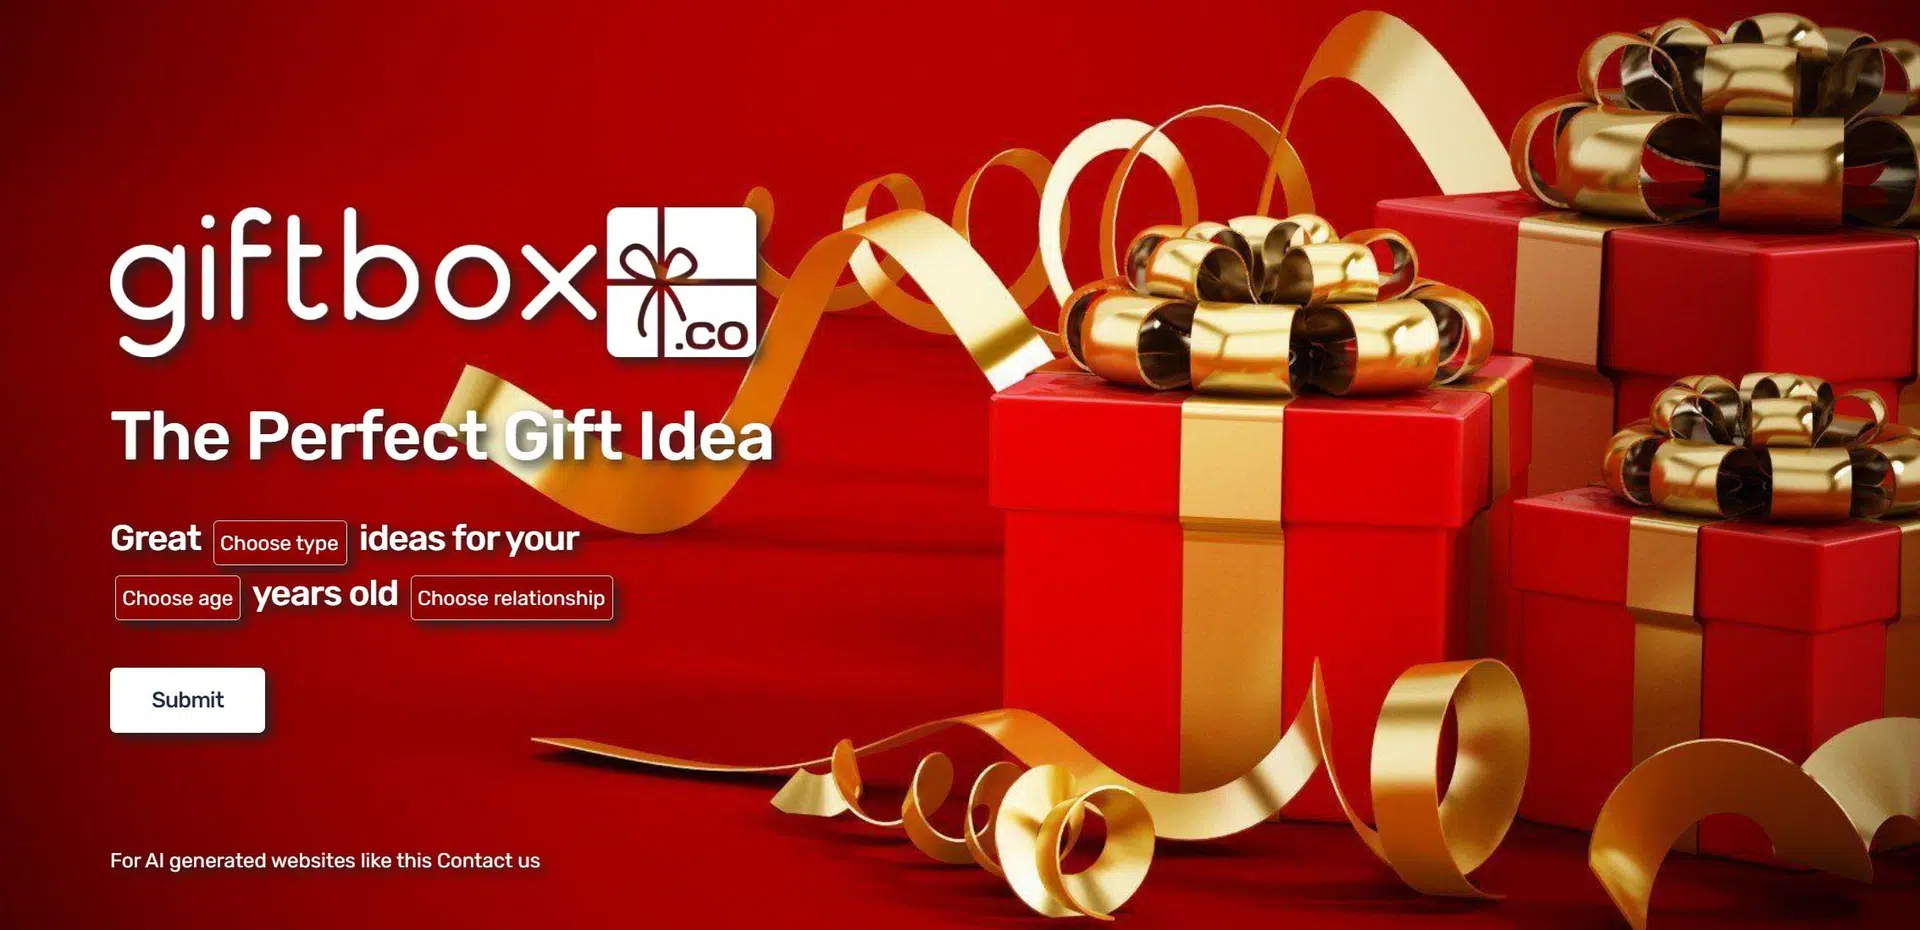 Giftboxwebsite picture